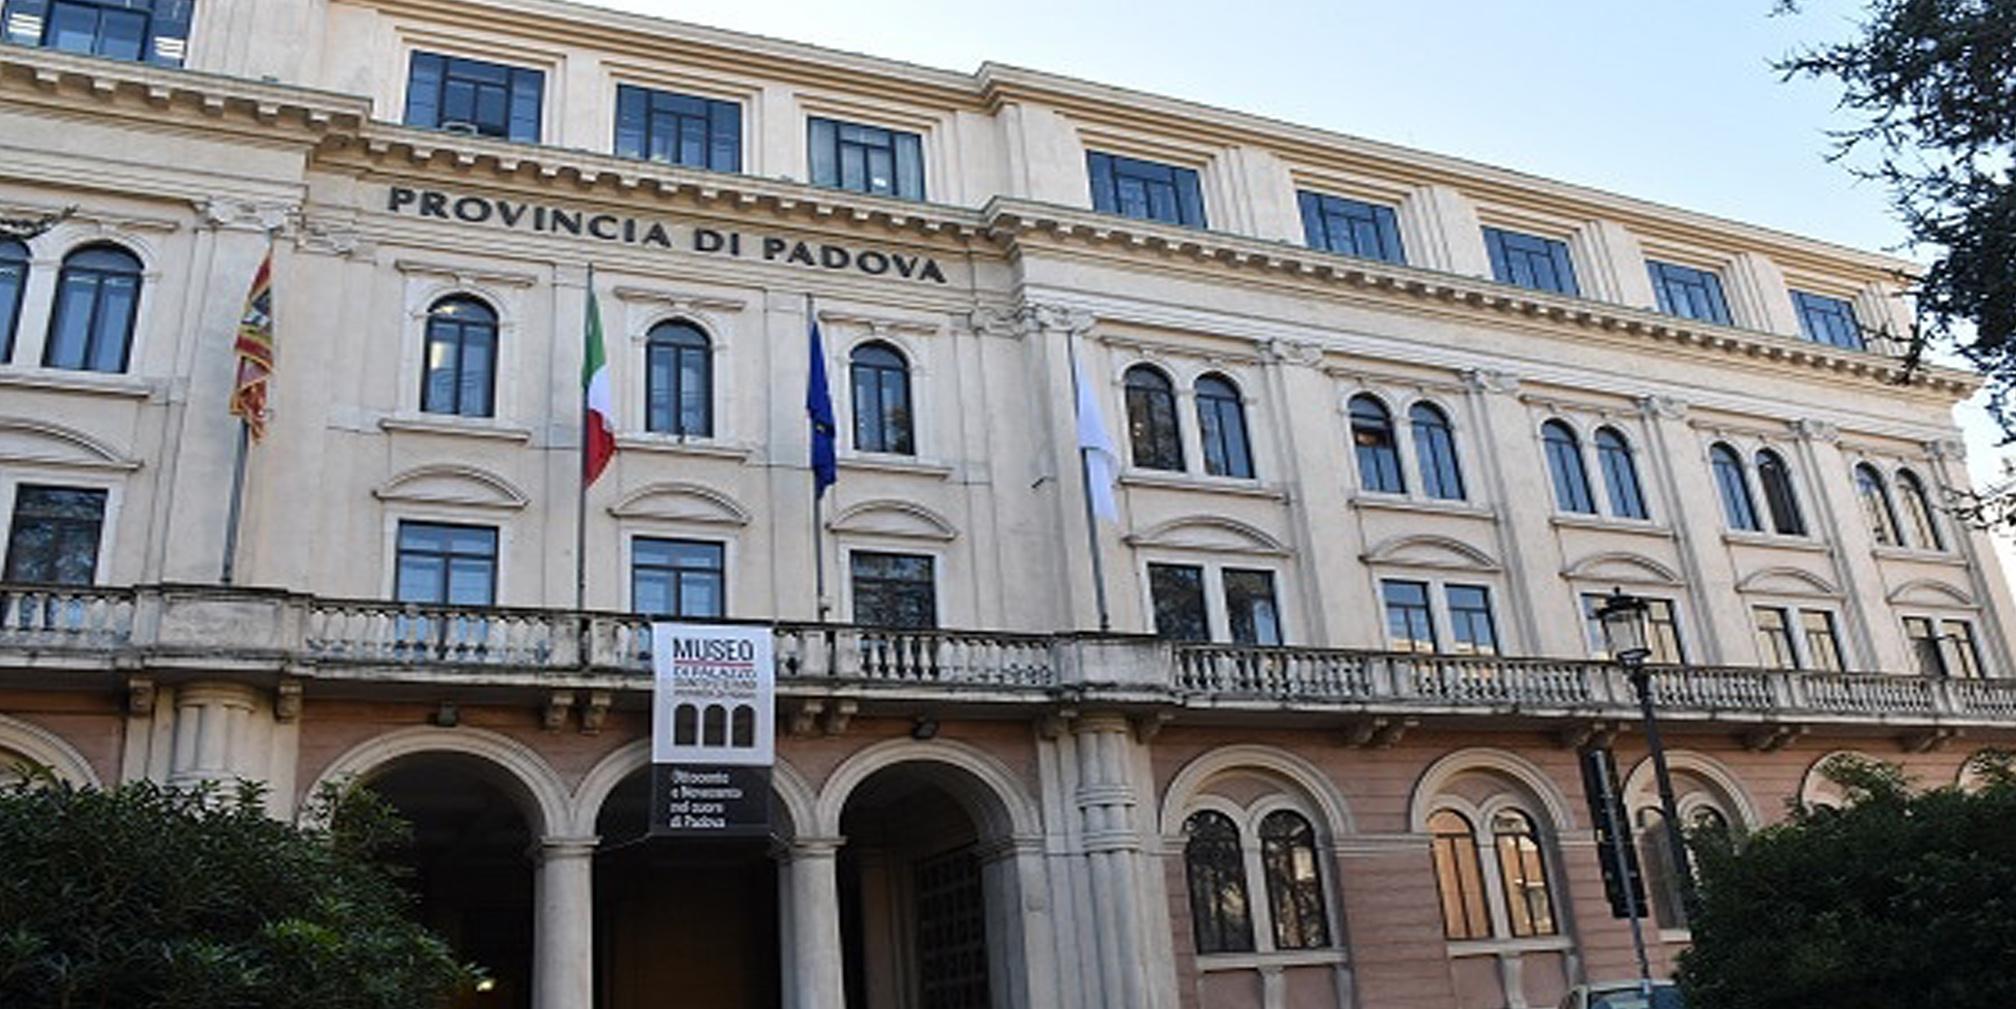 La facciata della sede della Provincia di Padova: Palazzo Santo Stefano